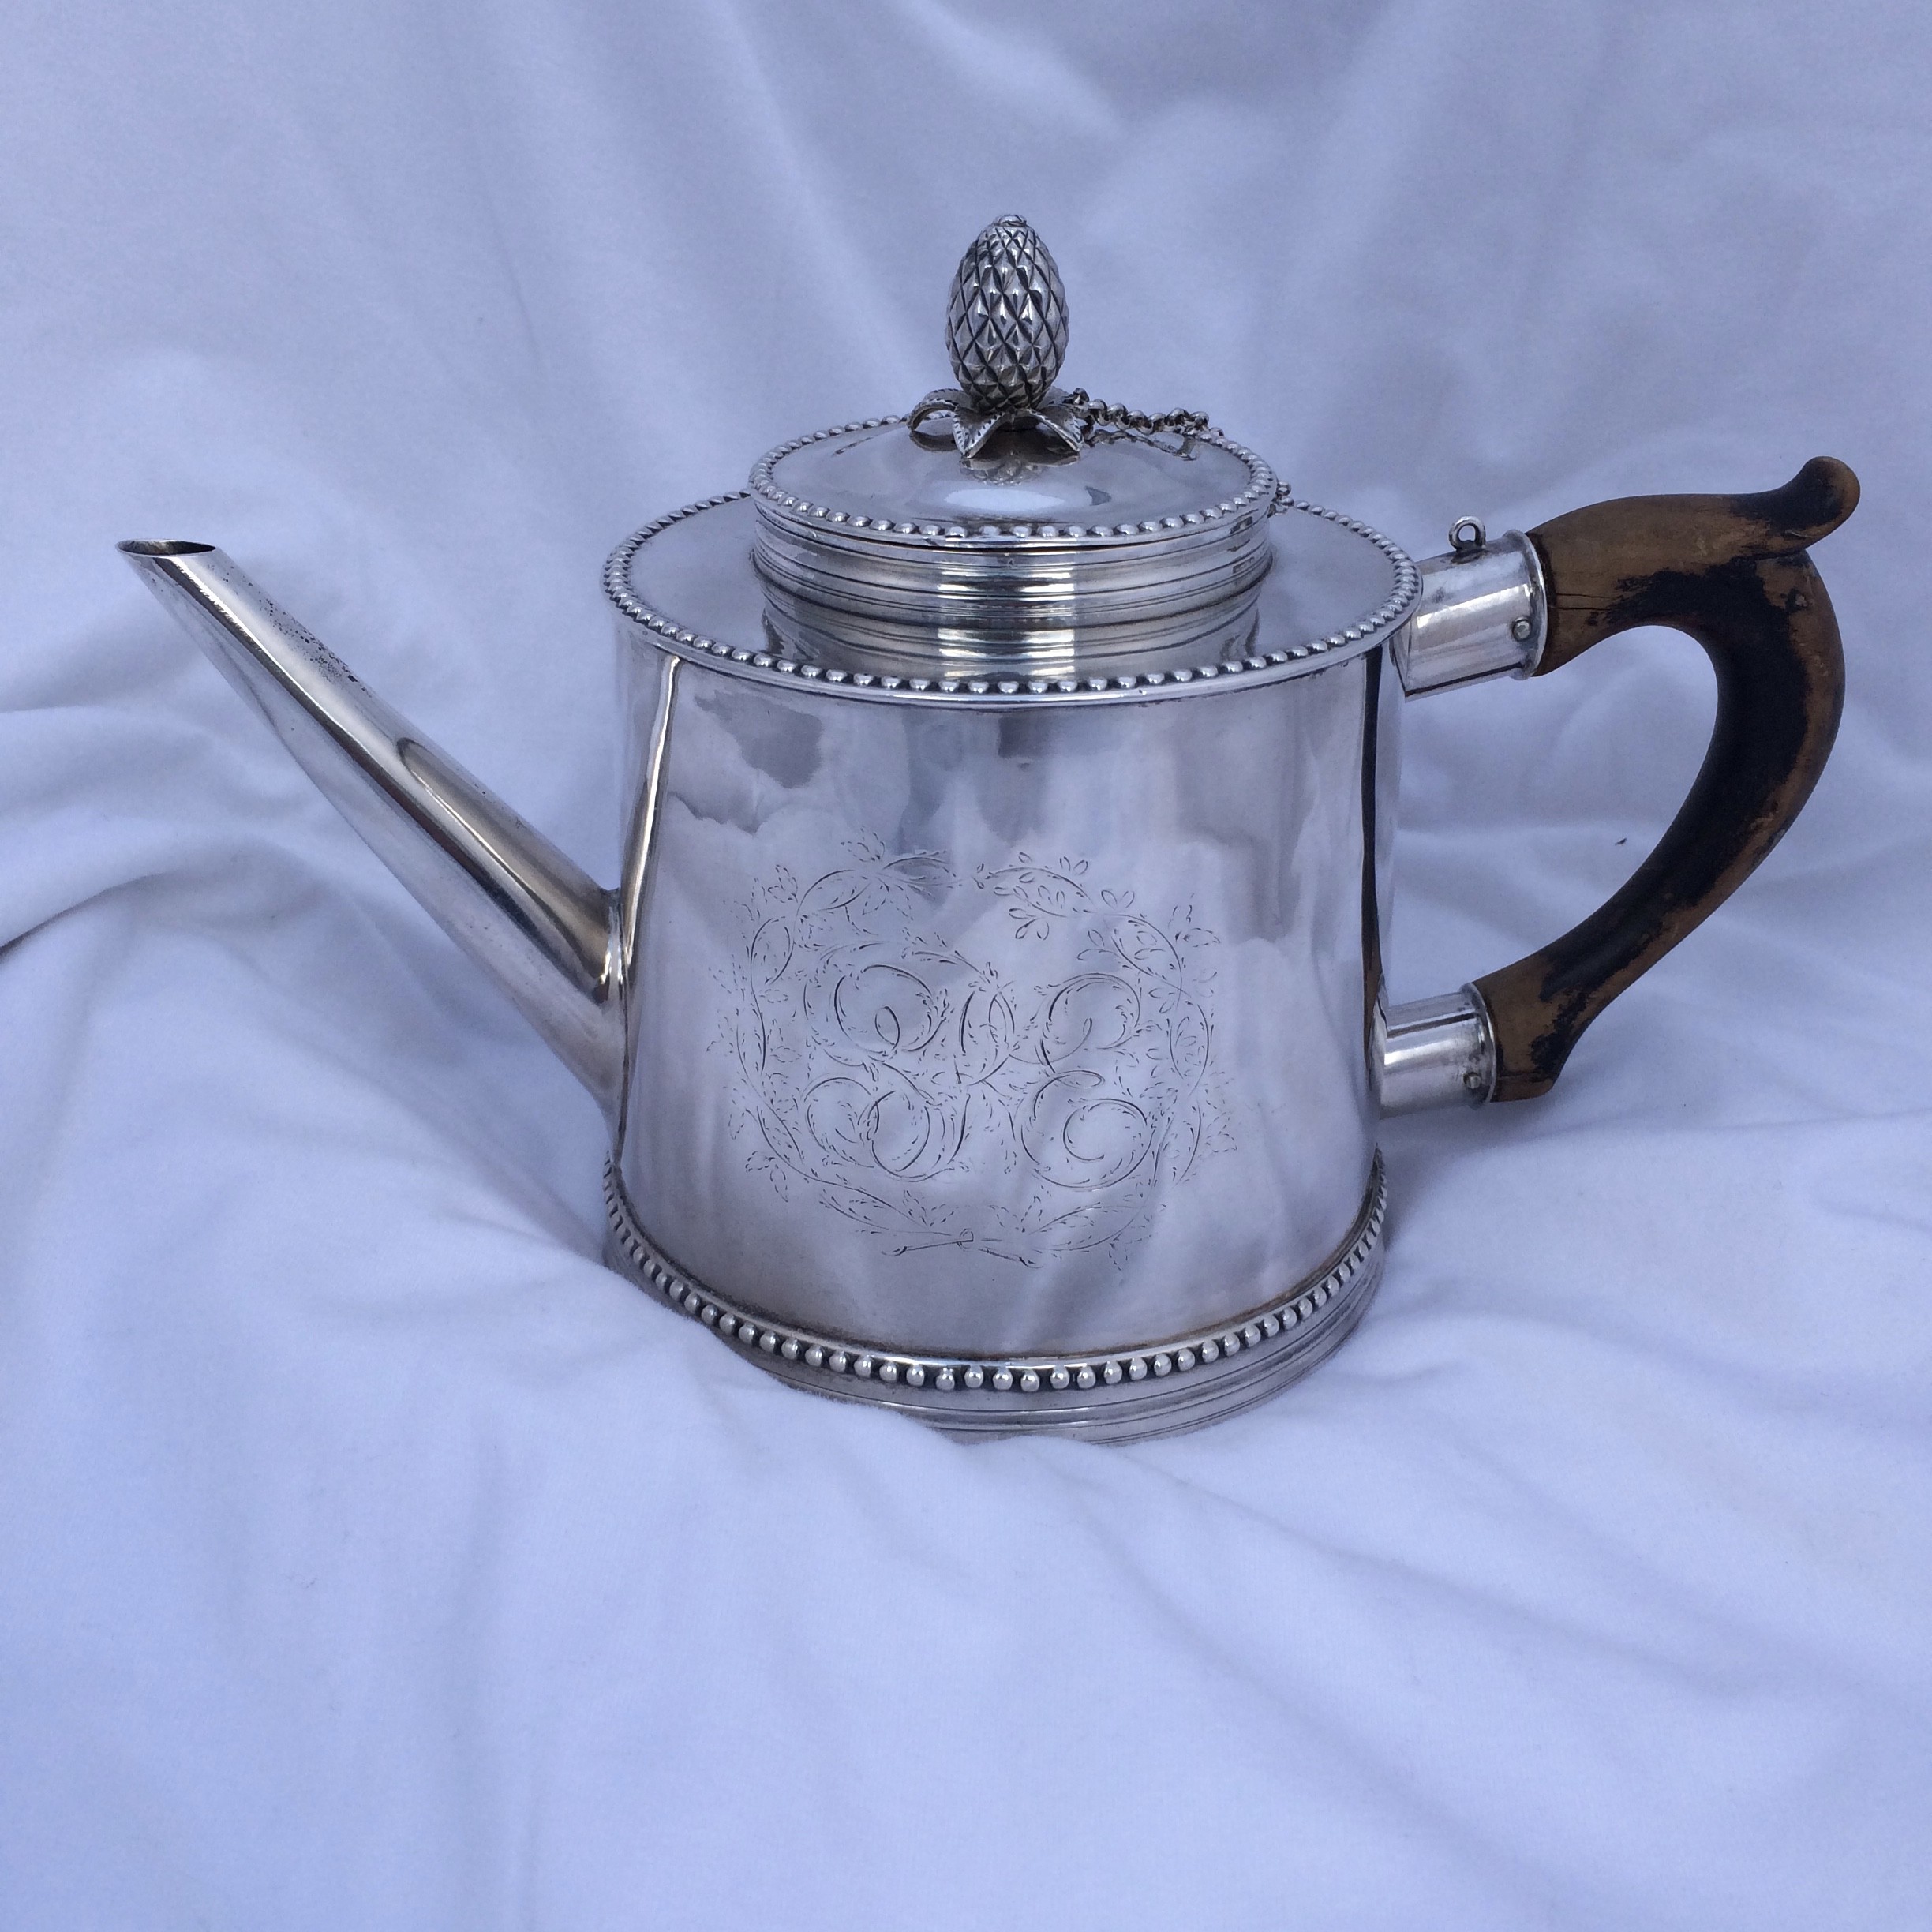 American Silver Tea Pot by Joseph Anthony Jr. circa 1785